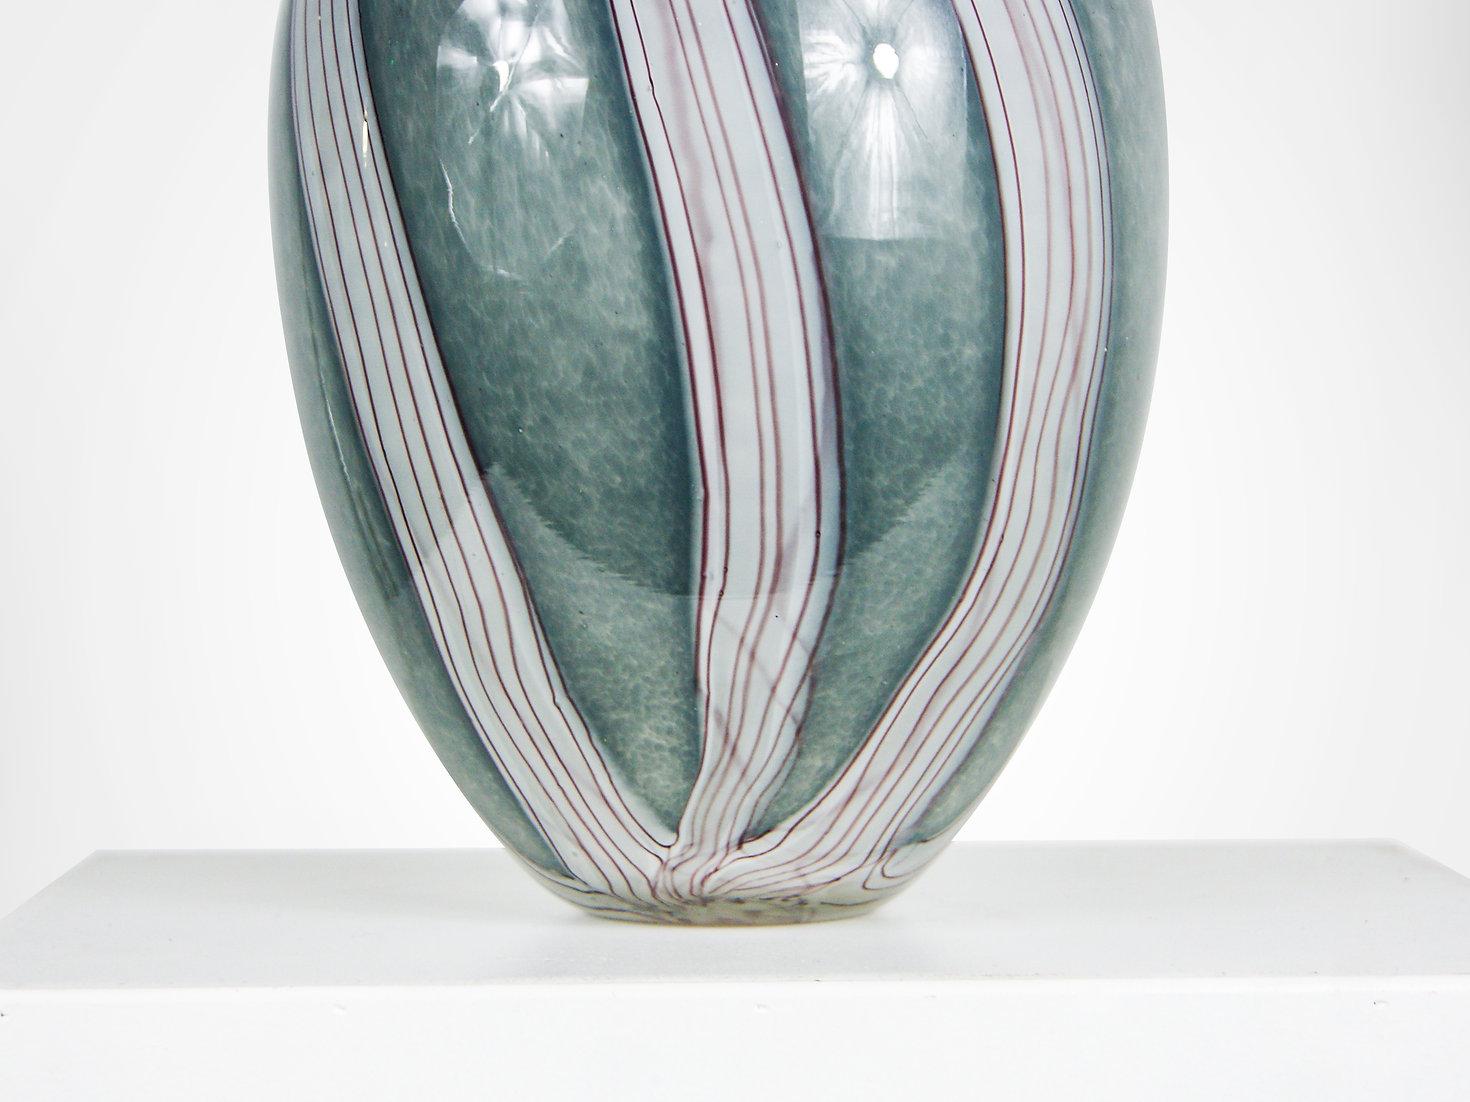 Énorme vase en verre de Murano sommerso par Luigi Onesto, vers les années 1950.
Vase inhabituel en verre épais et lourd de couleur gris argenté nuageux. 
Avec un noyau immergé de lave blanche traversé par de fines bandes rouges. L'intérieur est en